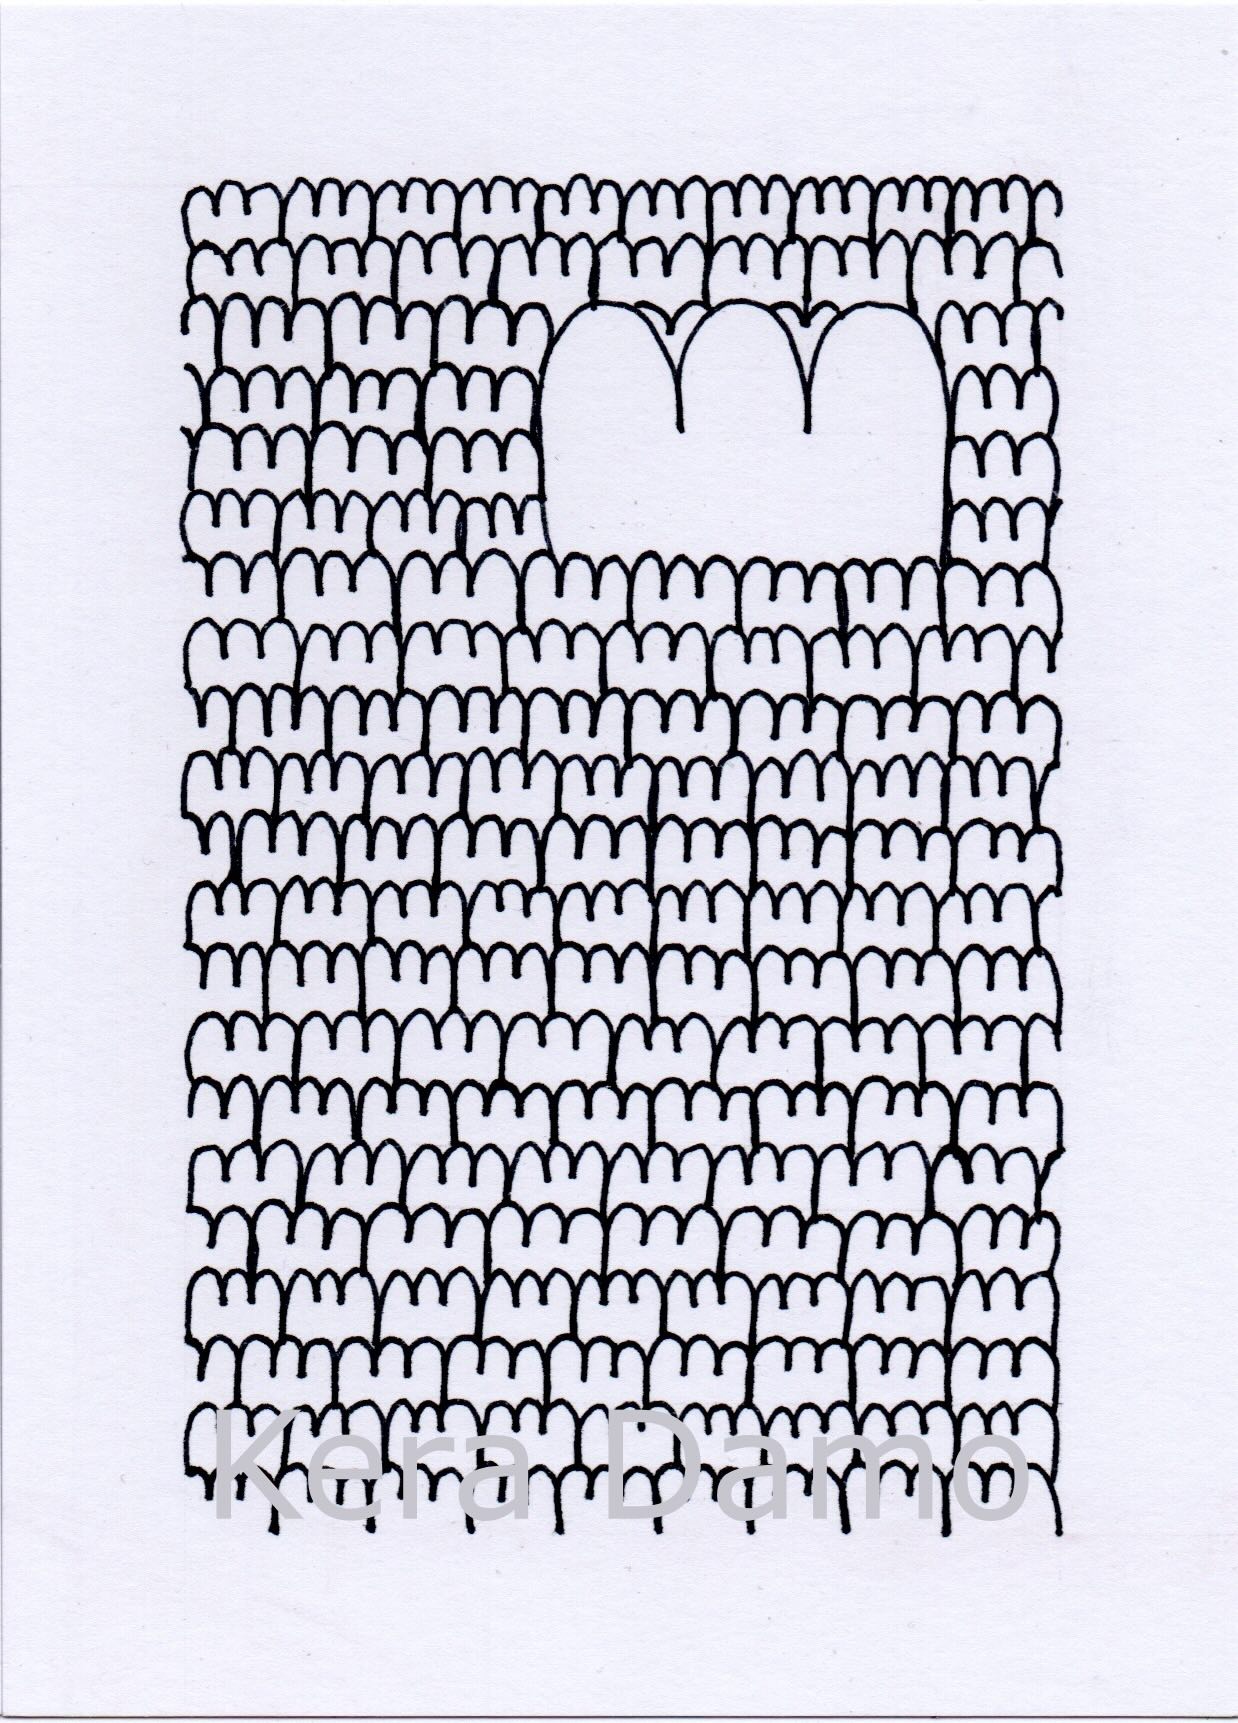 A black and white pen drawing exploring numeric details of the heart, made by visual artist Kera Damo from the Hague / Een zwart wit pentekening onderzoekt de numerieke details van het hart, gemaakt door beeldend kunstenaar Kera Damo uit Den Haag